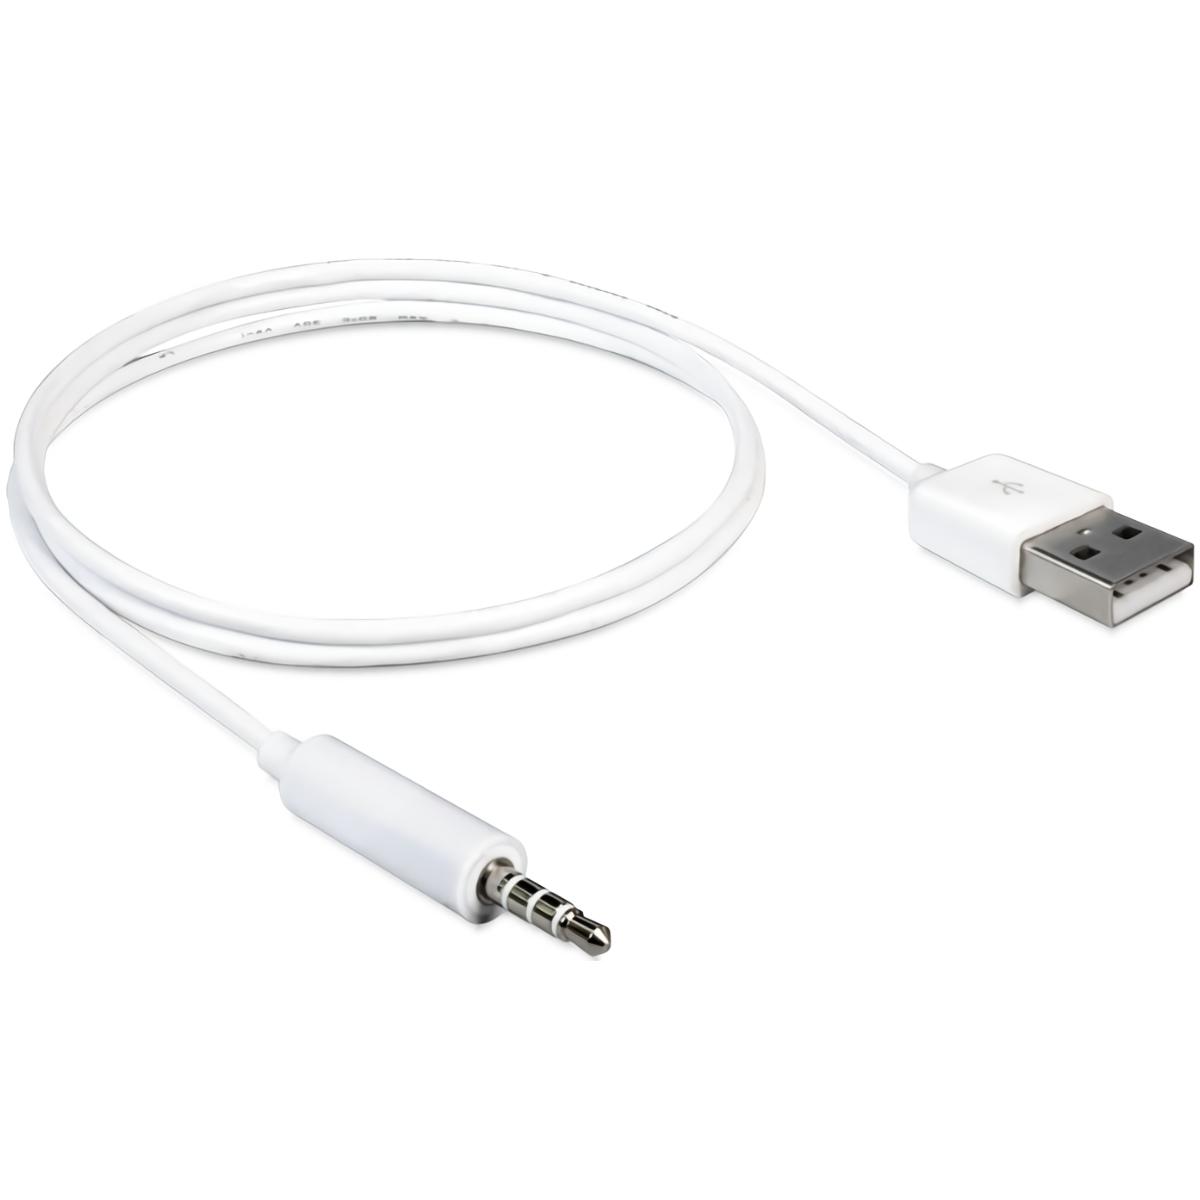 Mand gelijkheid Academie USB naar 4-polige Jack kabel voor iPod - USB naar Jack kabel, Connector 1:  USB A male, Connector 2: 4-polige 3.5 mm Jack male, Lengte: 1 meter, Kleur:  Wit.